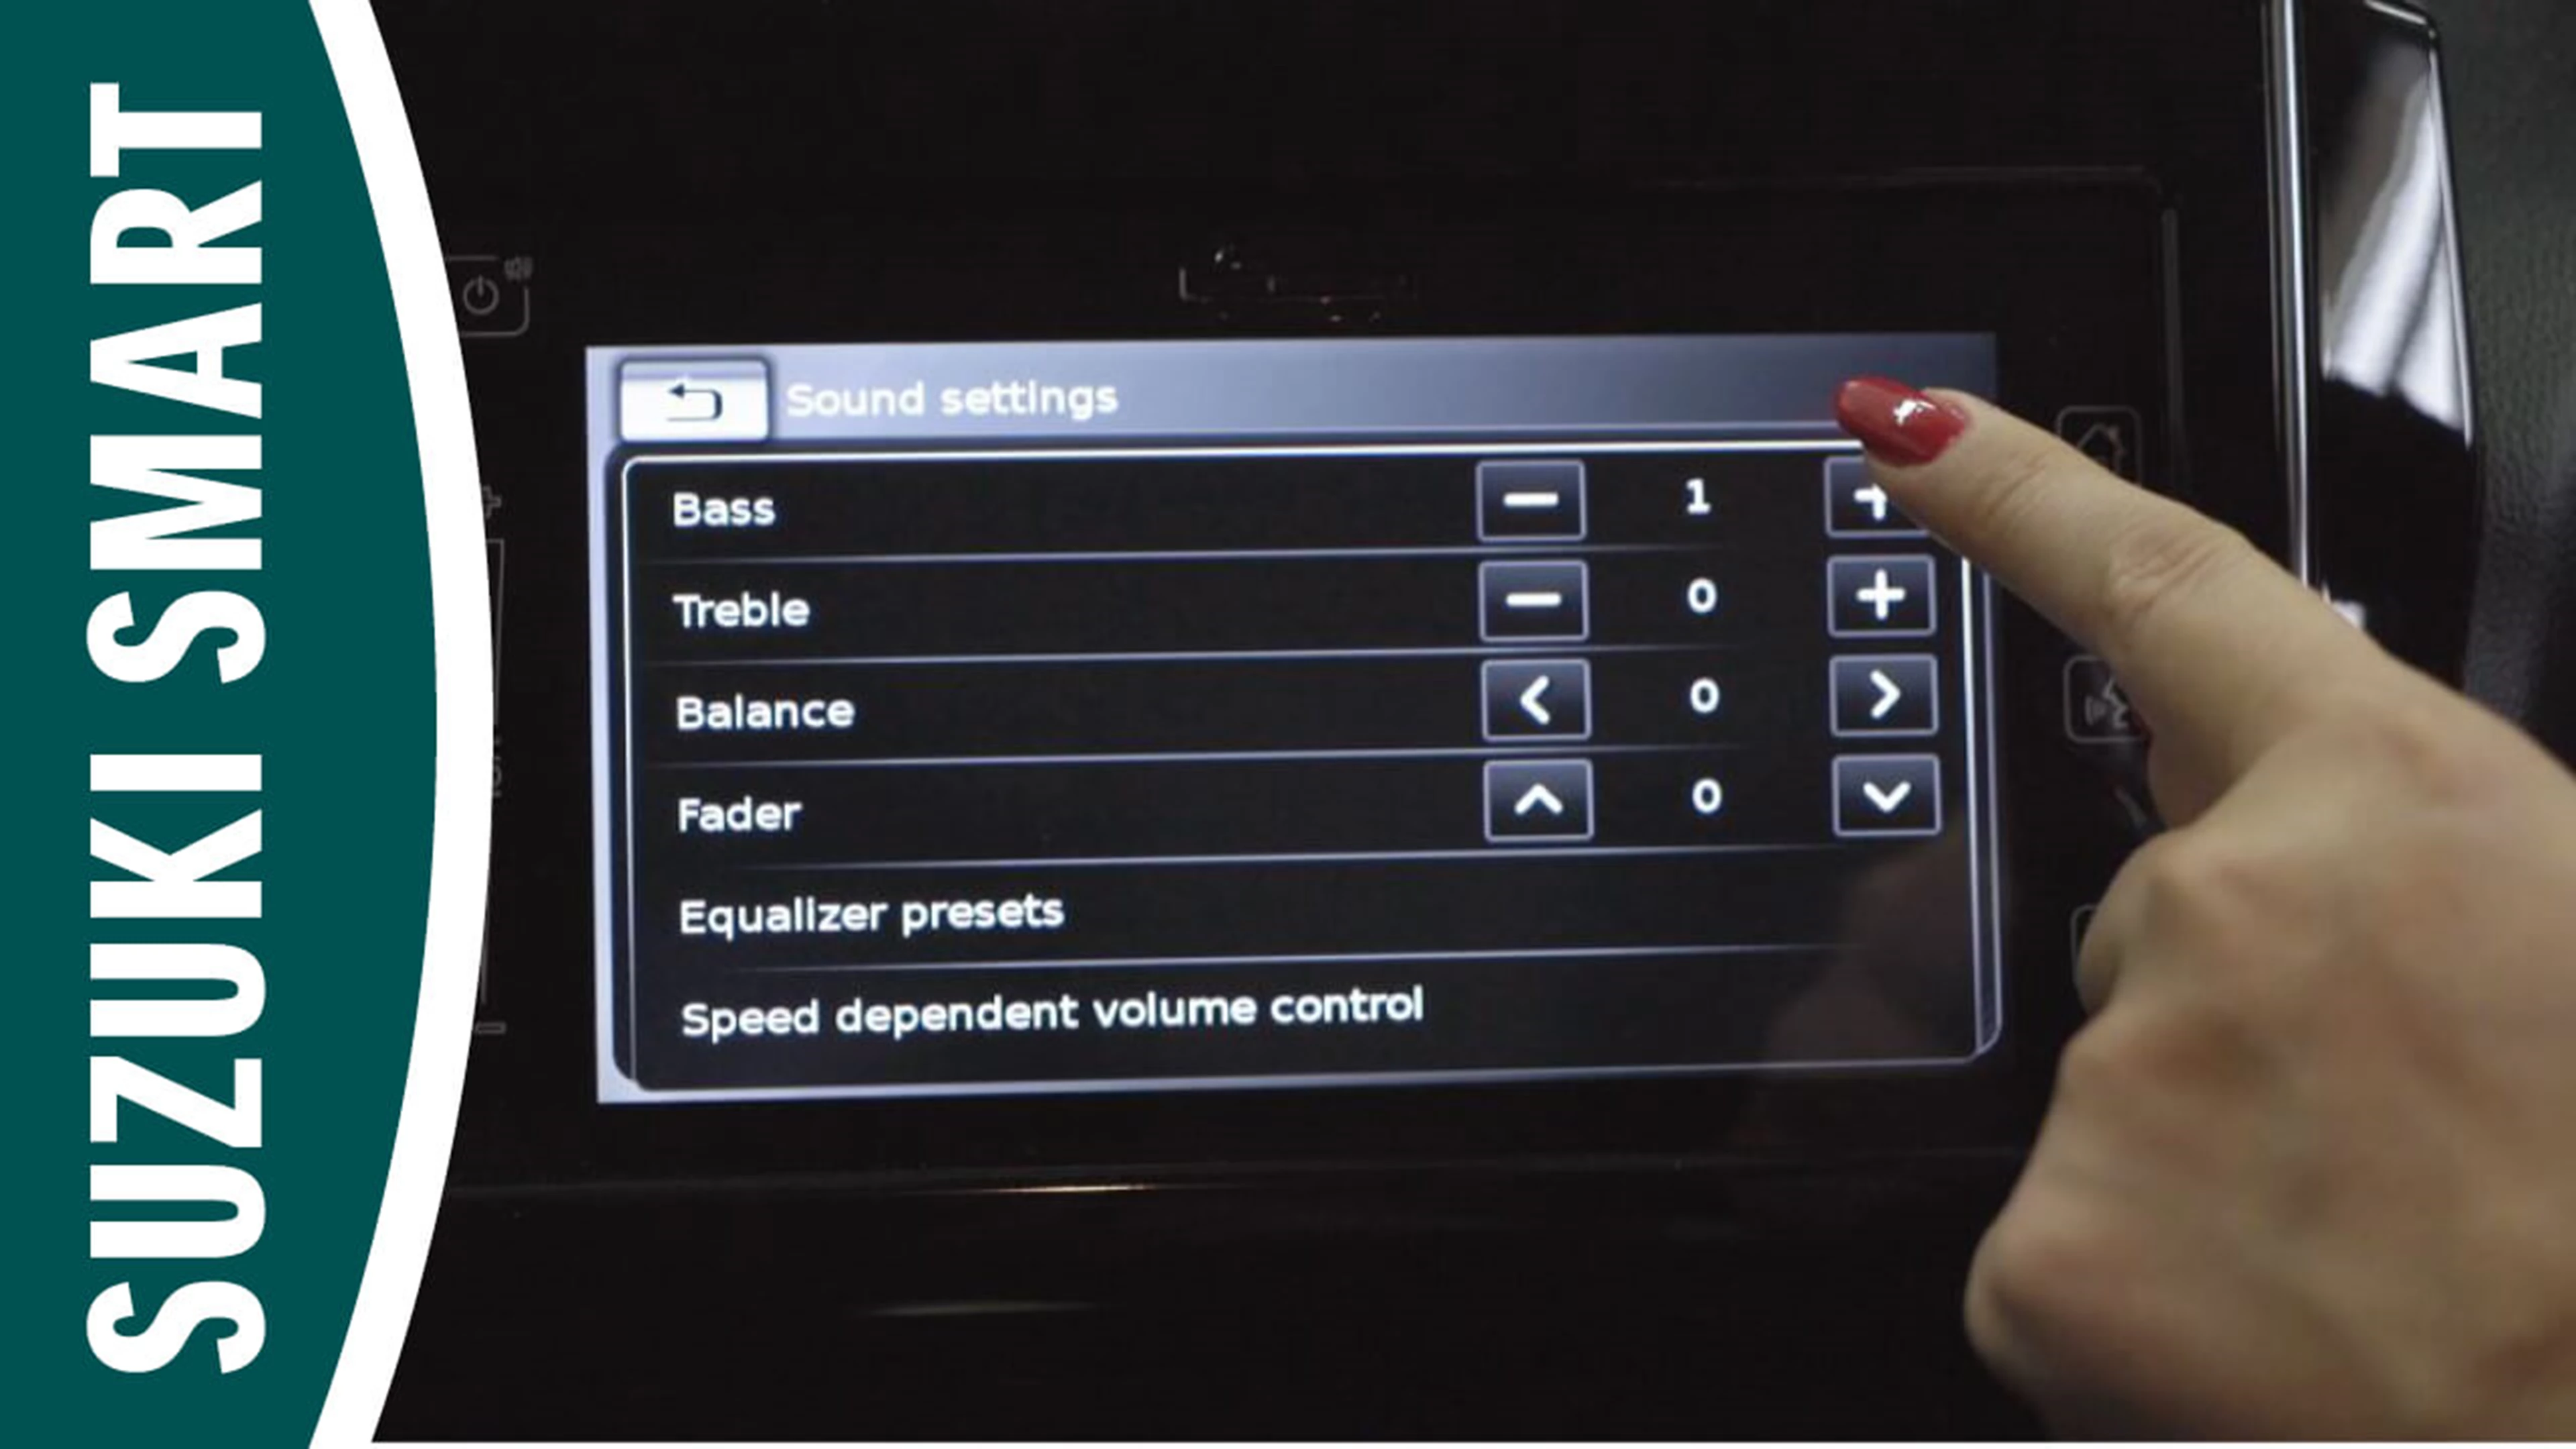 Using audio controls in car